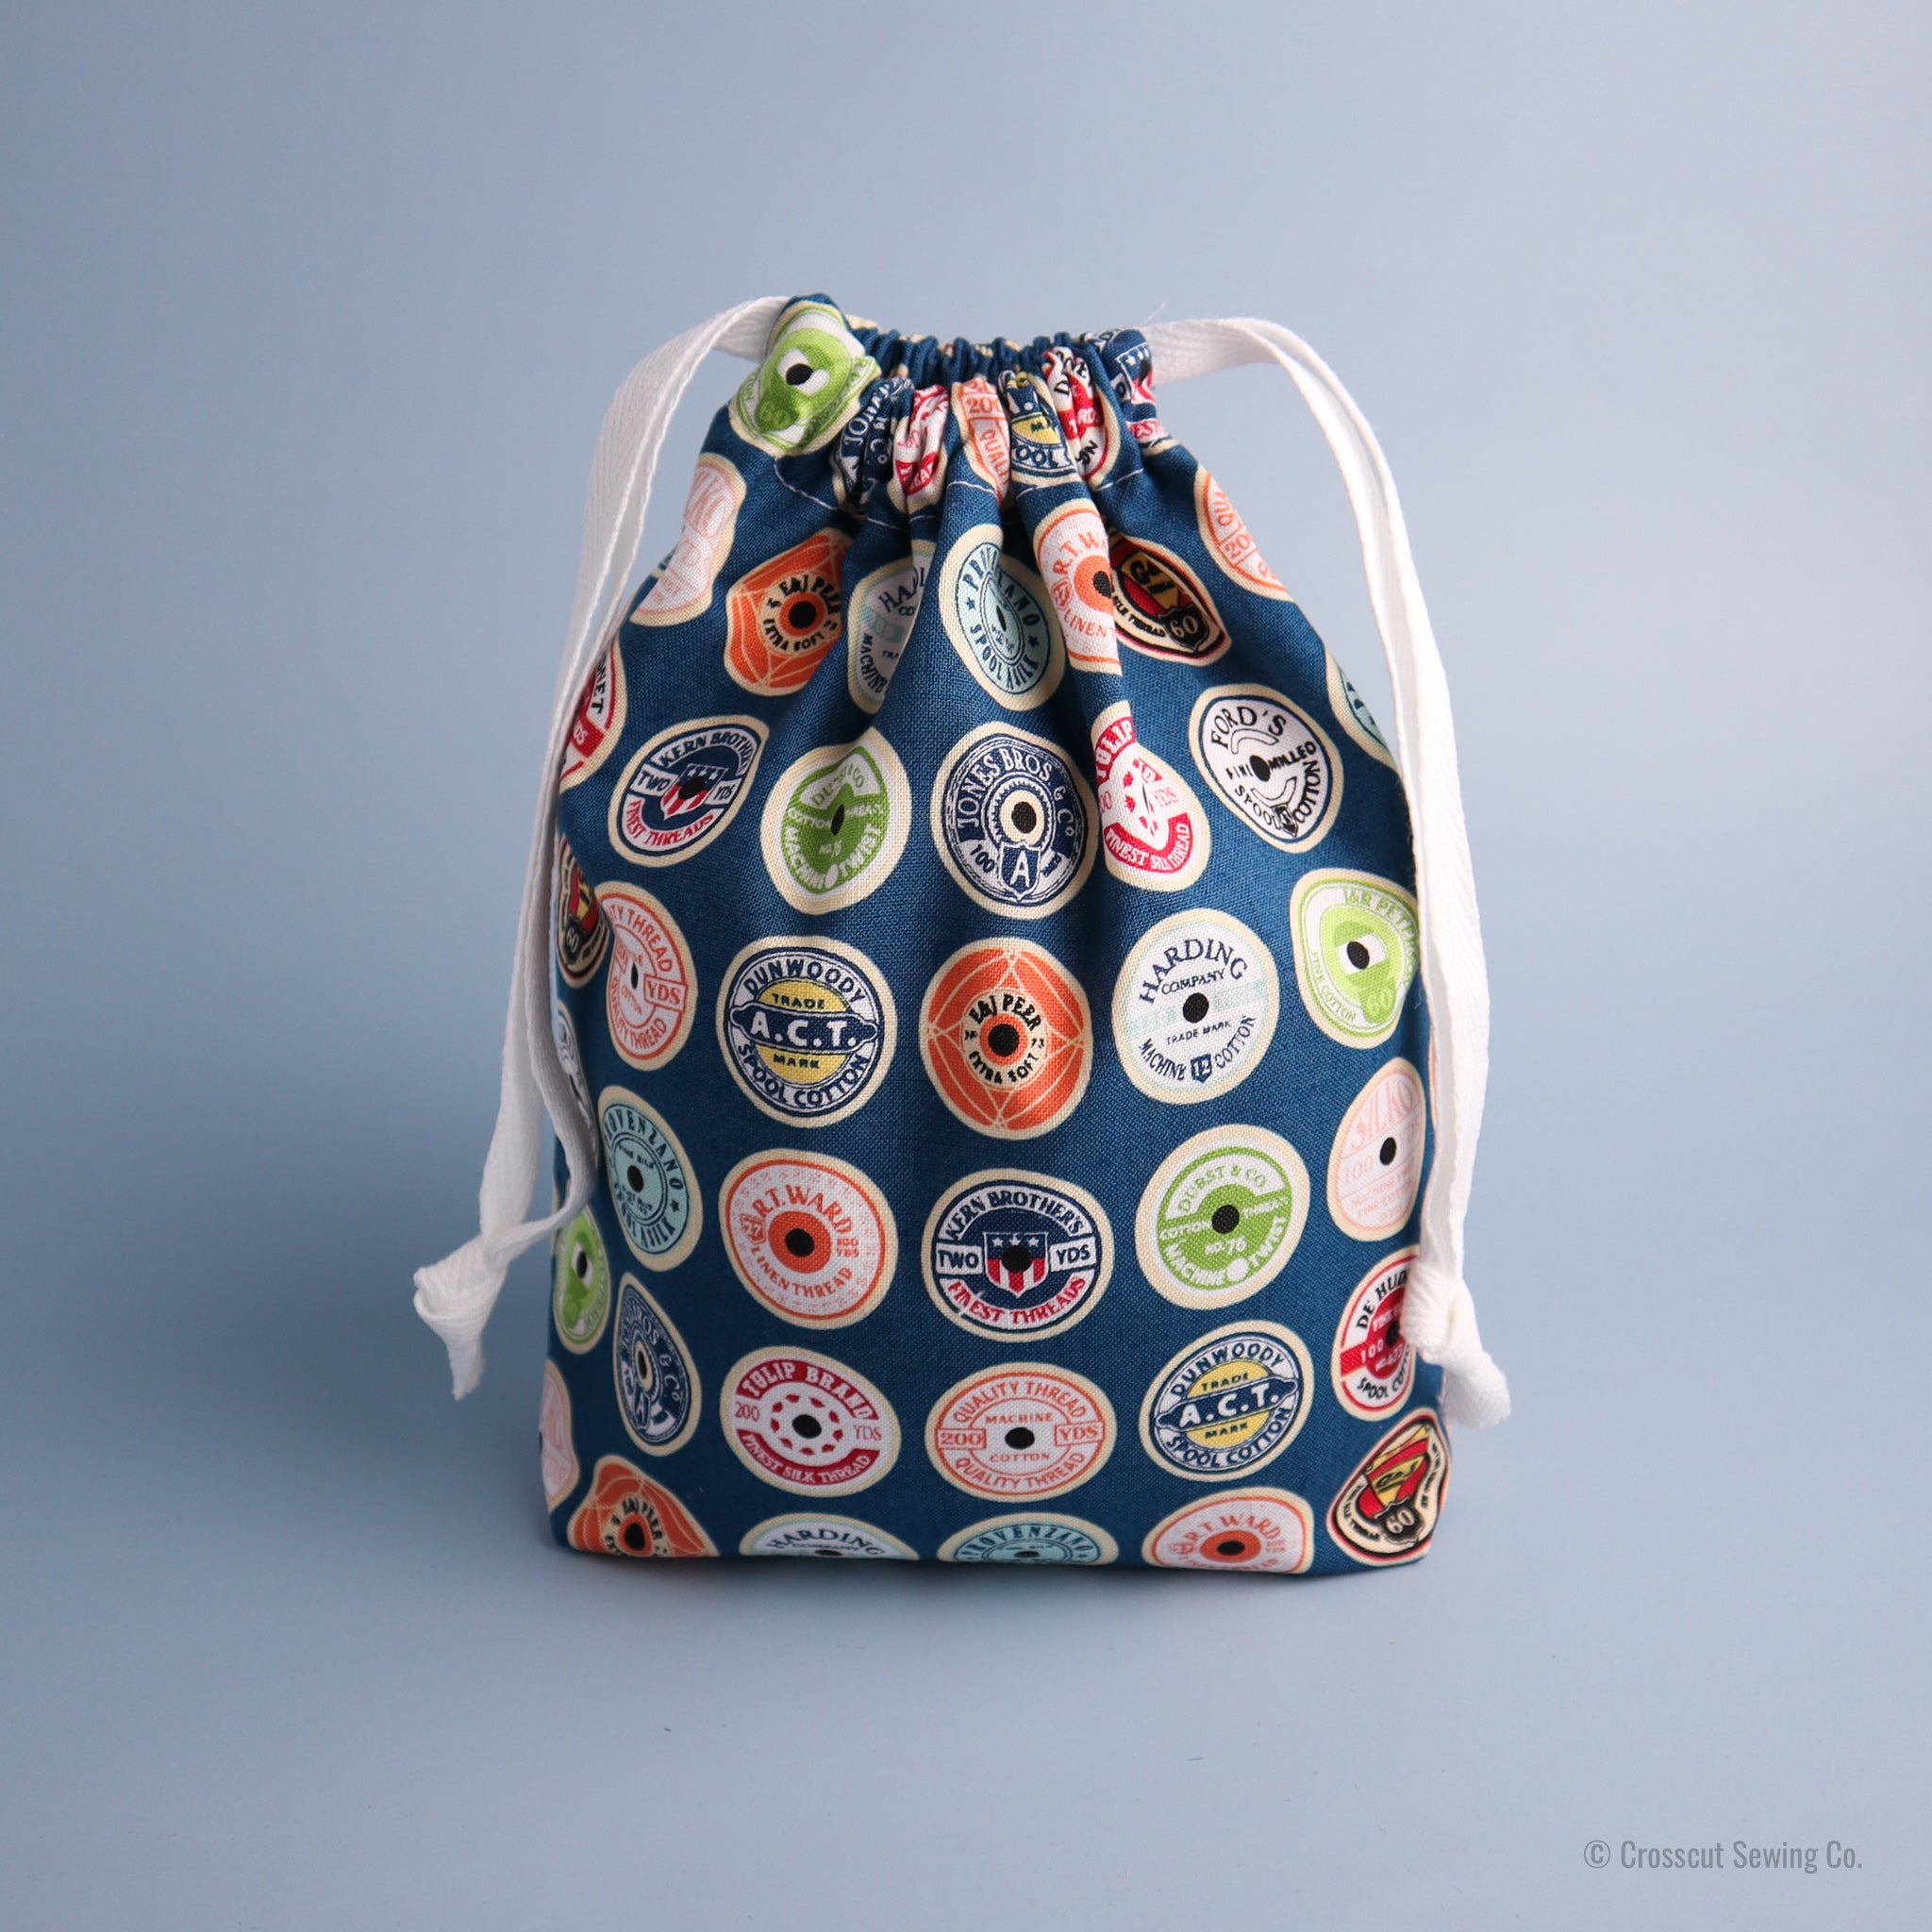 Drawstring Bag Sewing Kit - Spools- Makes 2 Bags